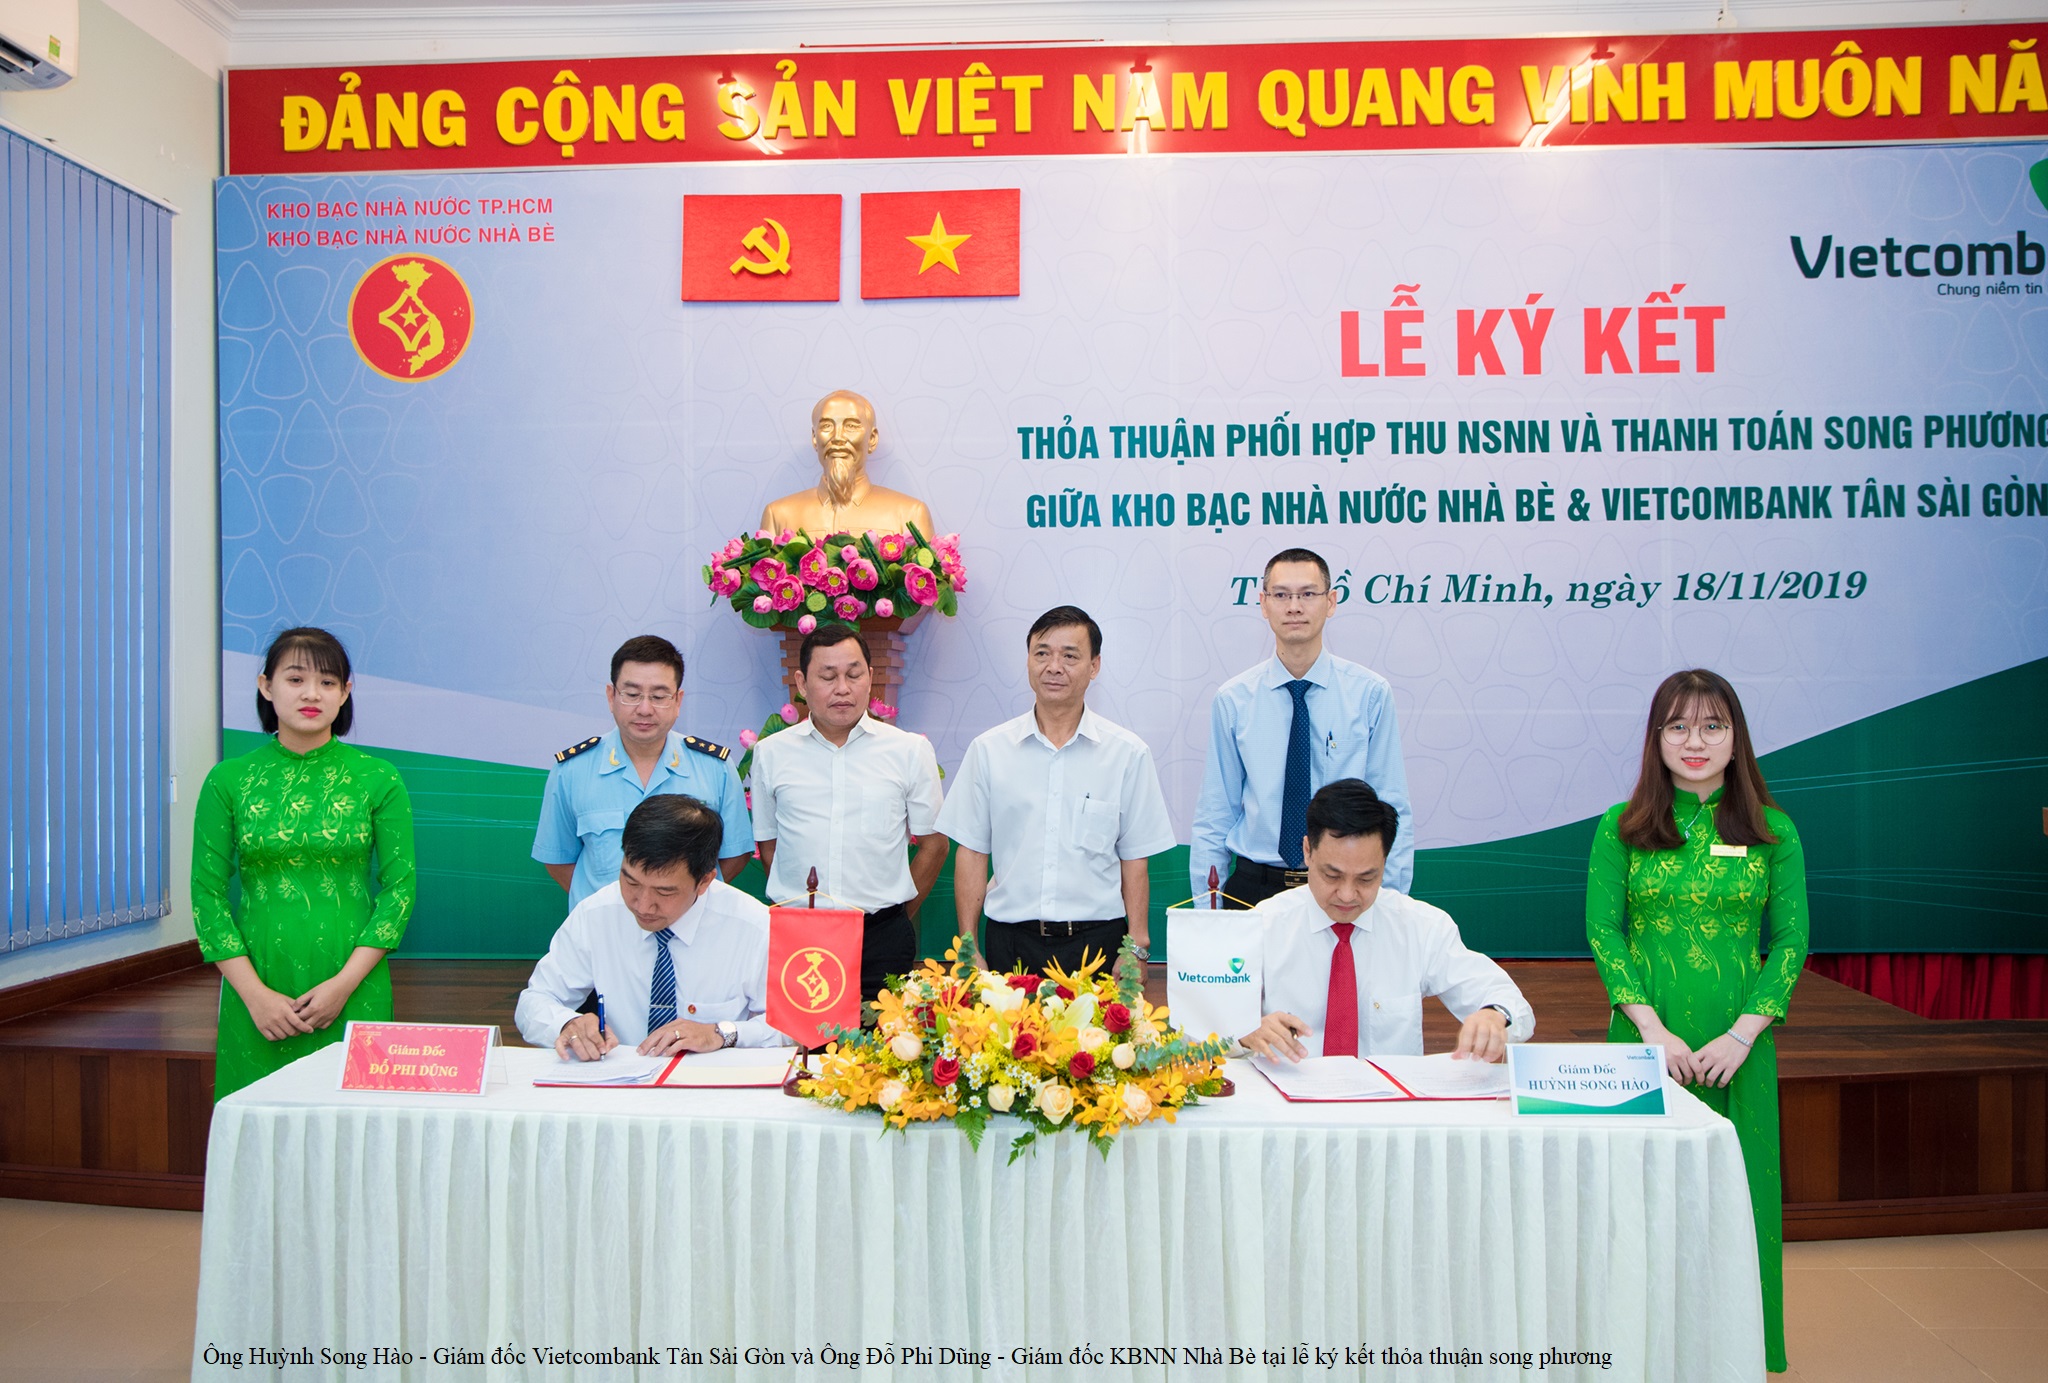 Vietcombank Tân Sài Gòn hợp tác thanh toán song phương điện tử và phối hợp thu ngân sách Nhà nước với Kho bạc Nhà nước huyện Nhà Bè